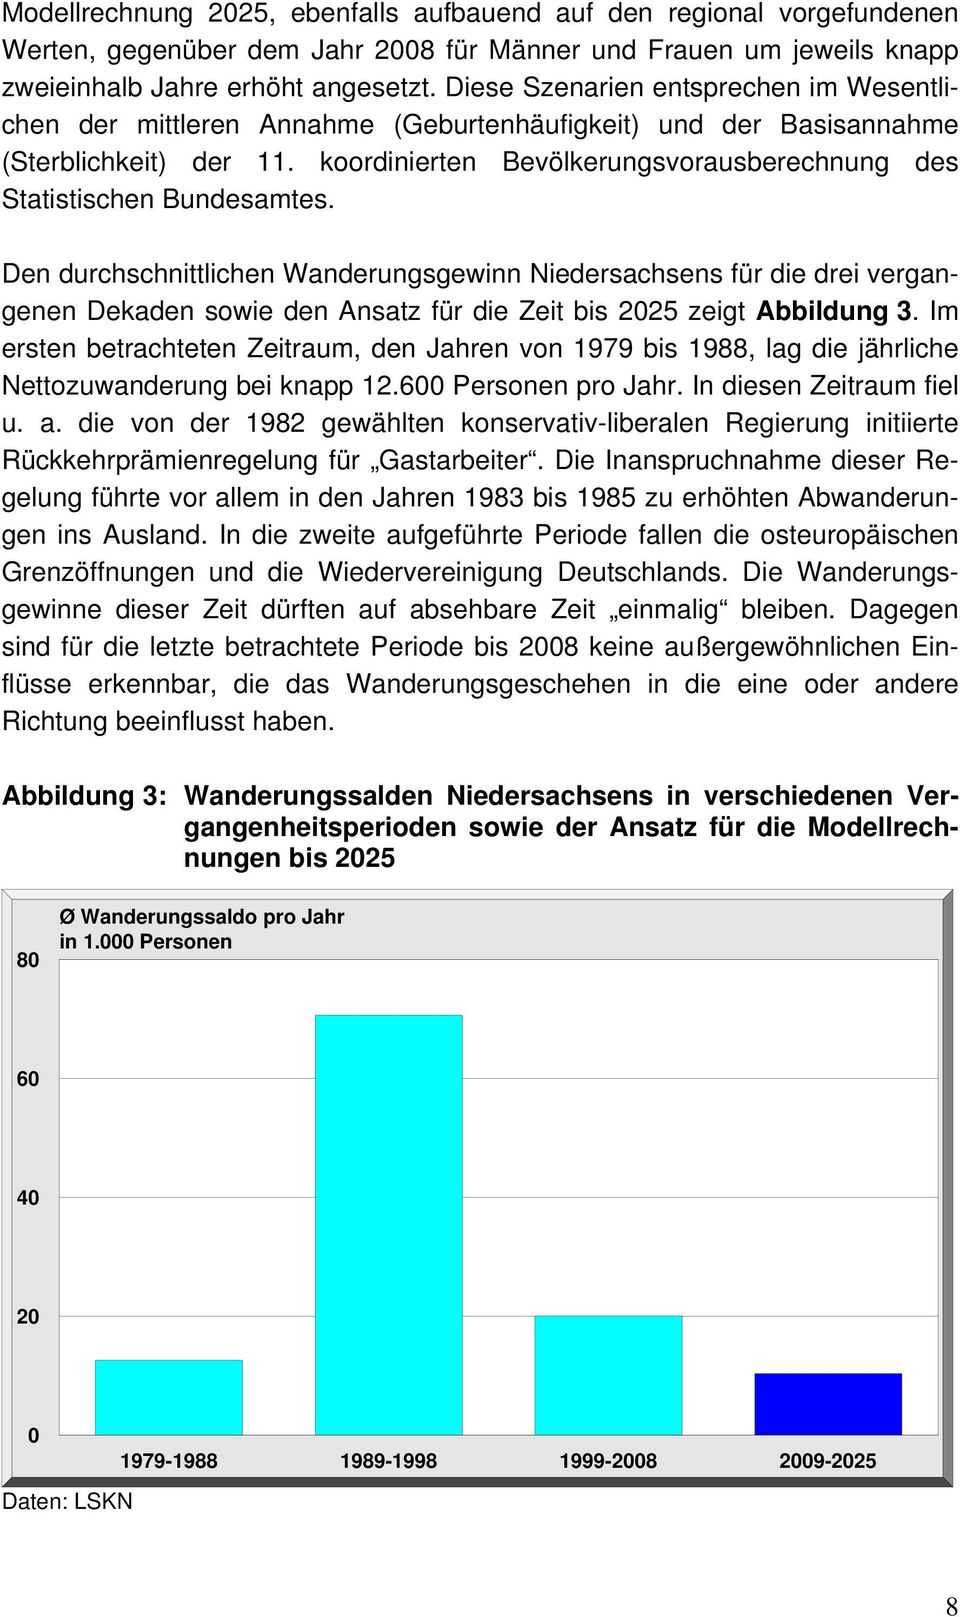 koordinierten Bevölkerungsvorausberechnung des Statistischen Bundesamtes.